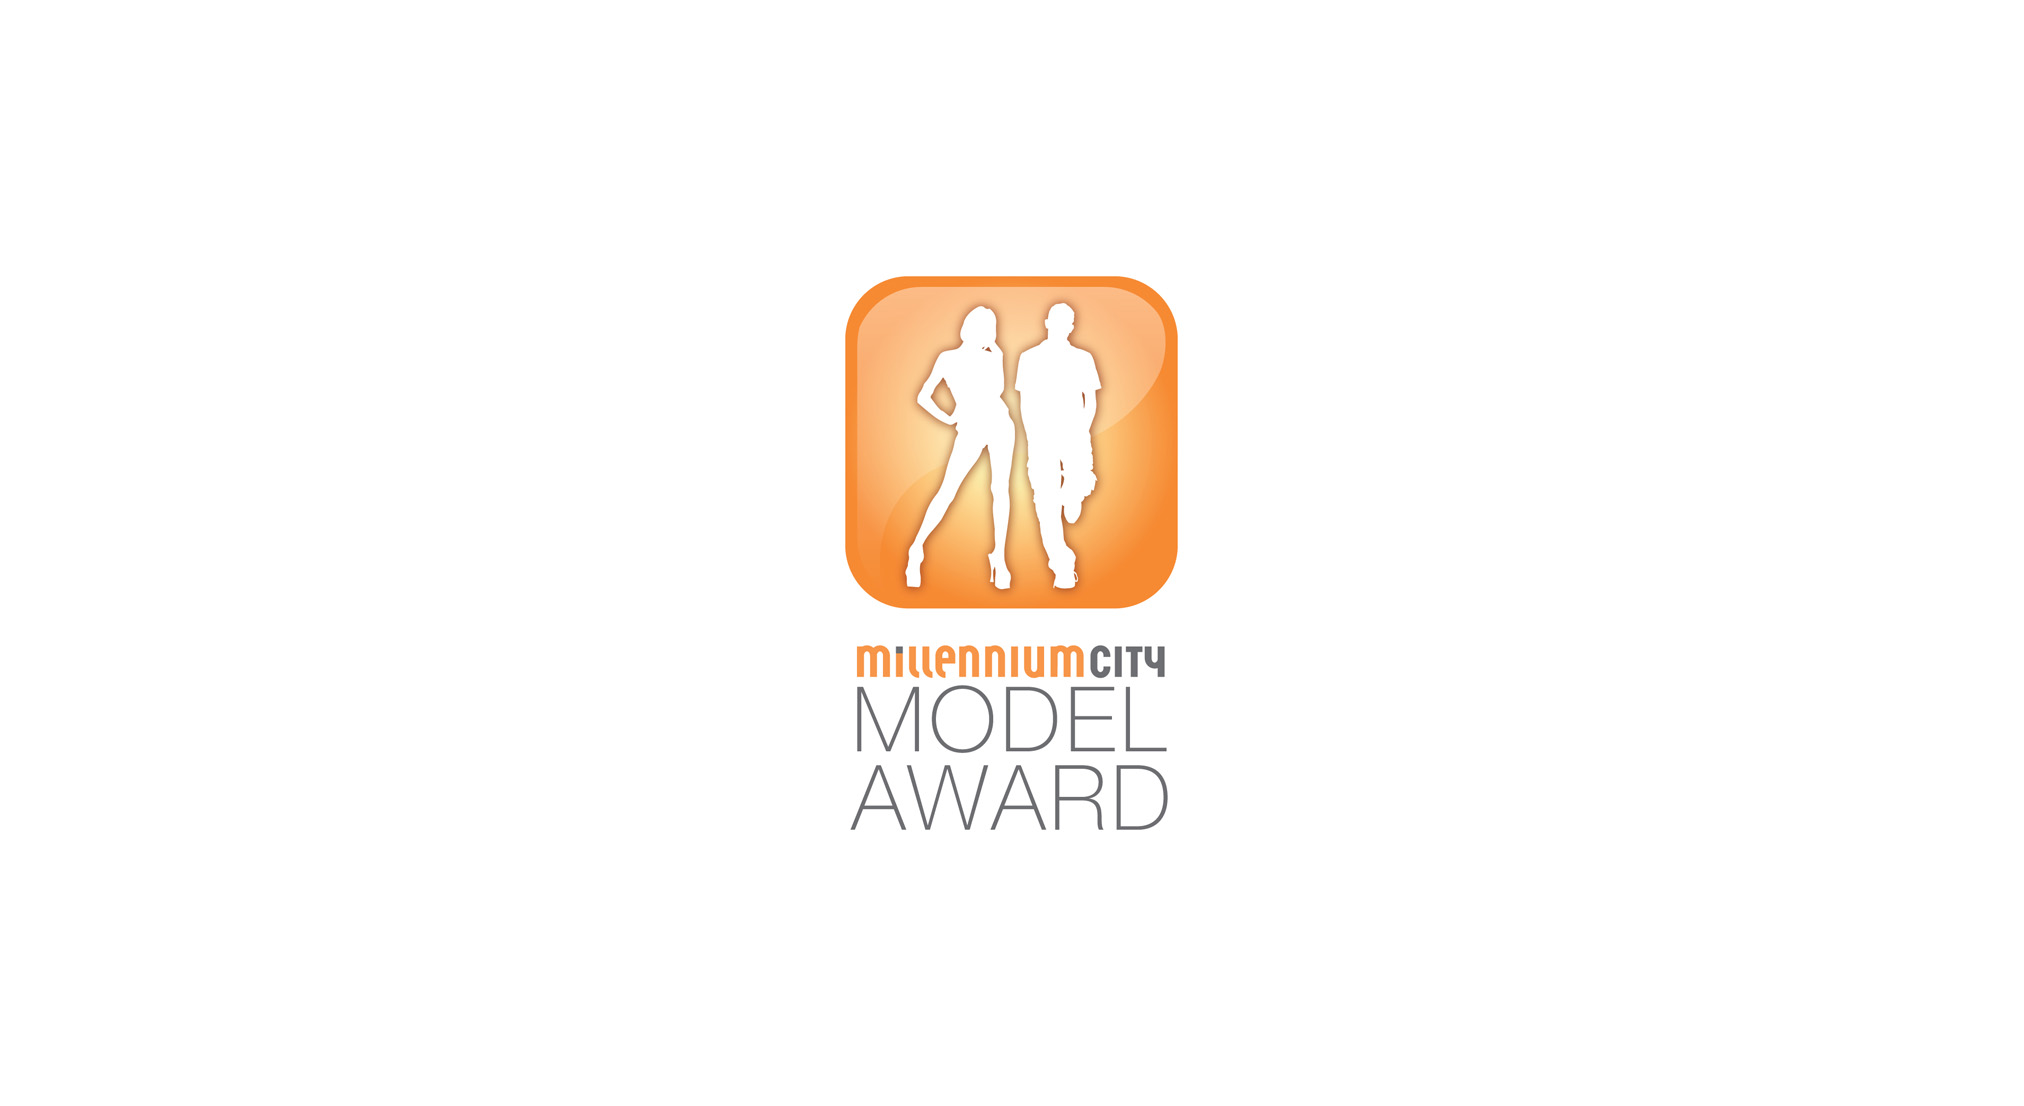 Millennium City Model Award, Mann und Frau Silhouetten in orangem Button